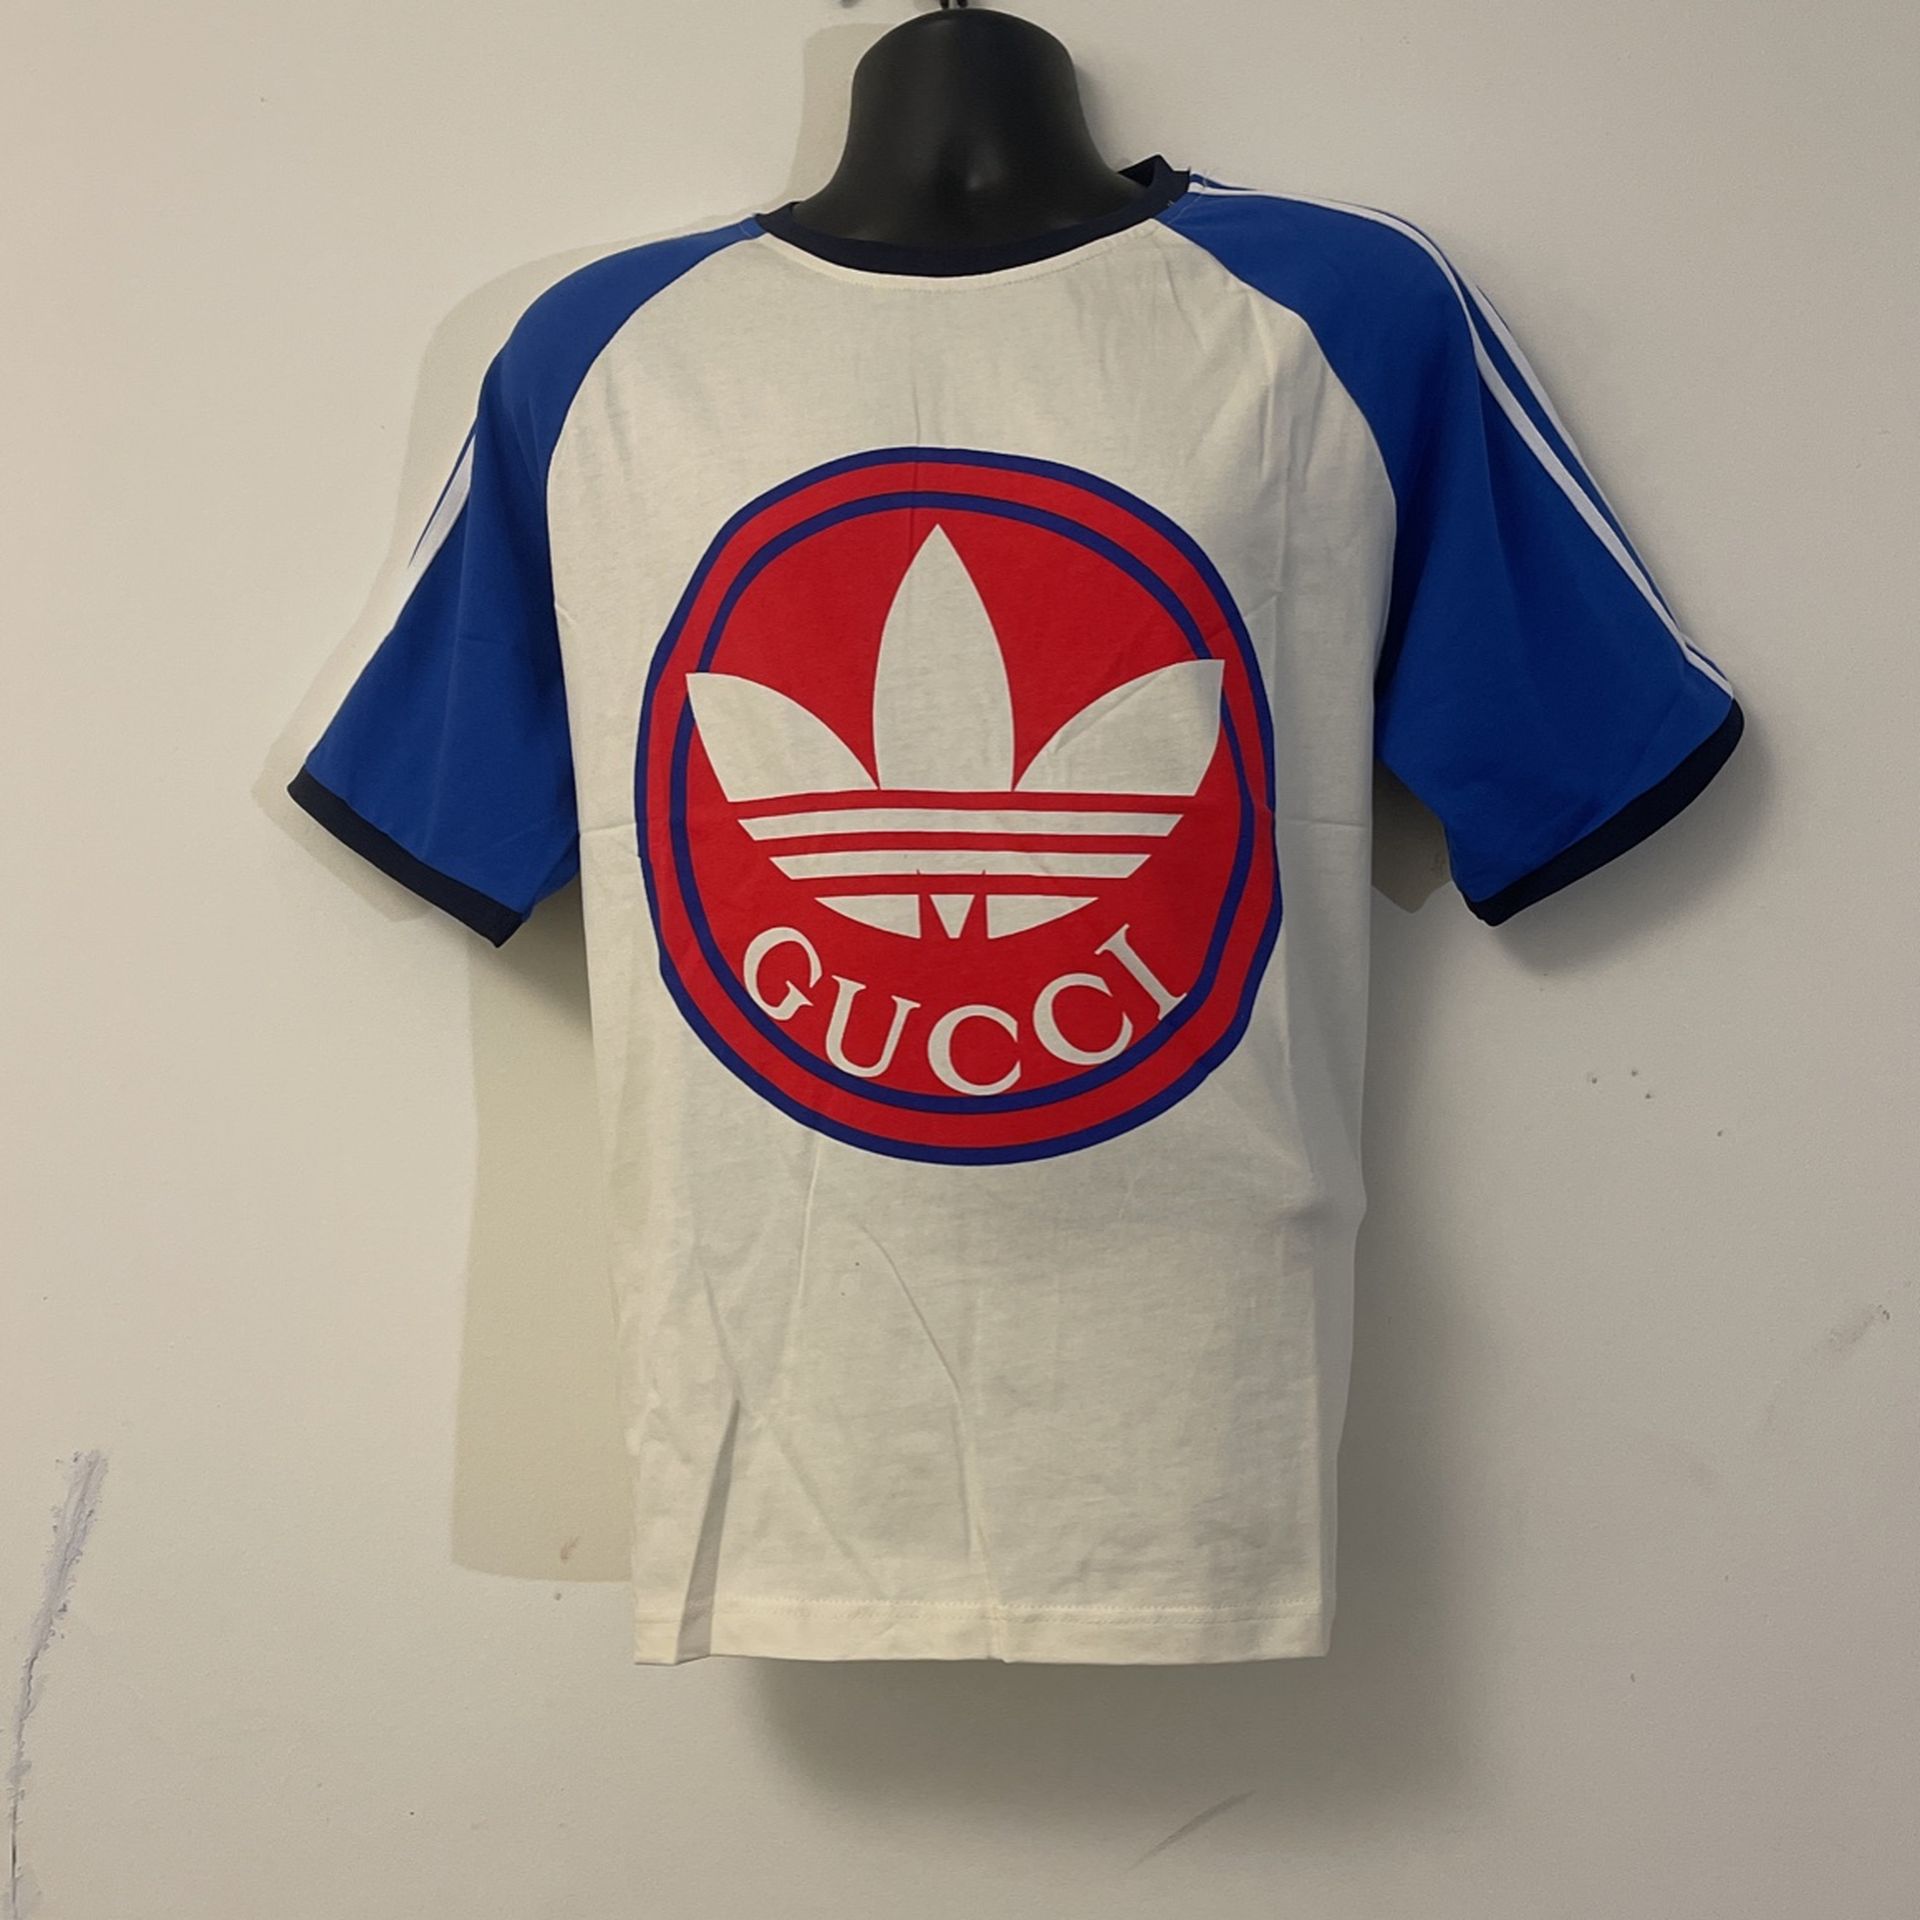 Gucci Adda’s T-shirt 